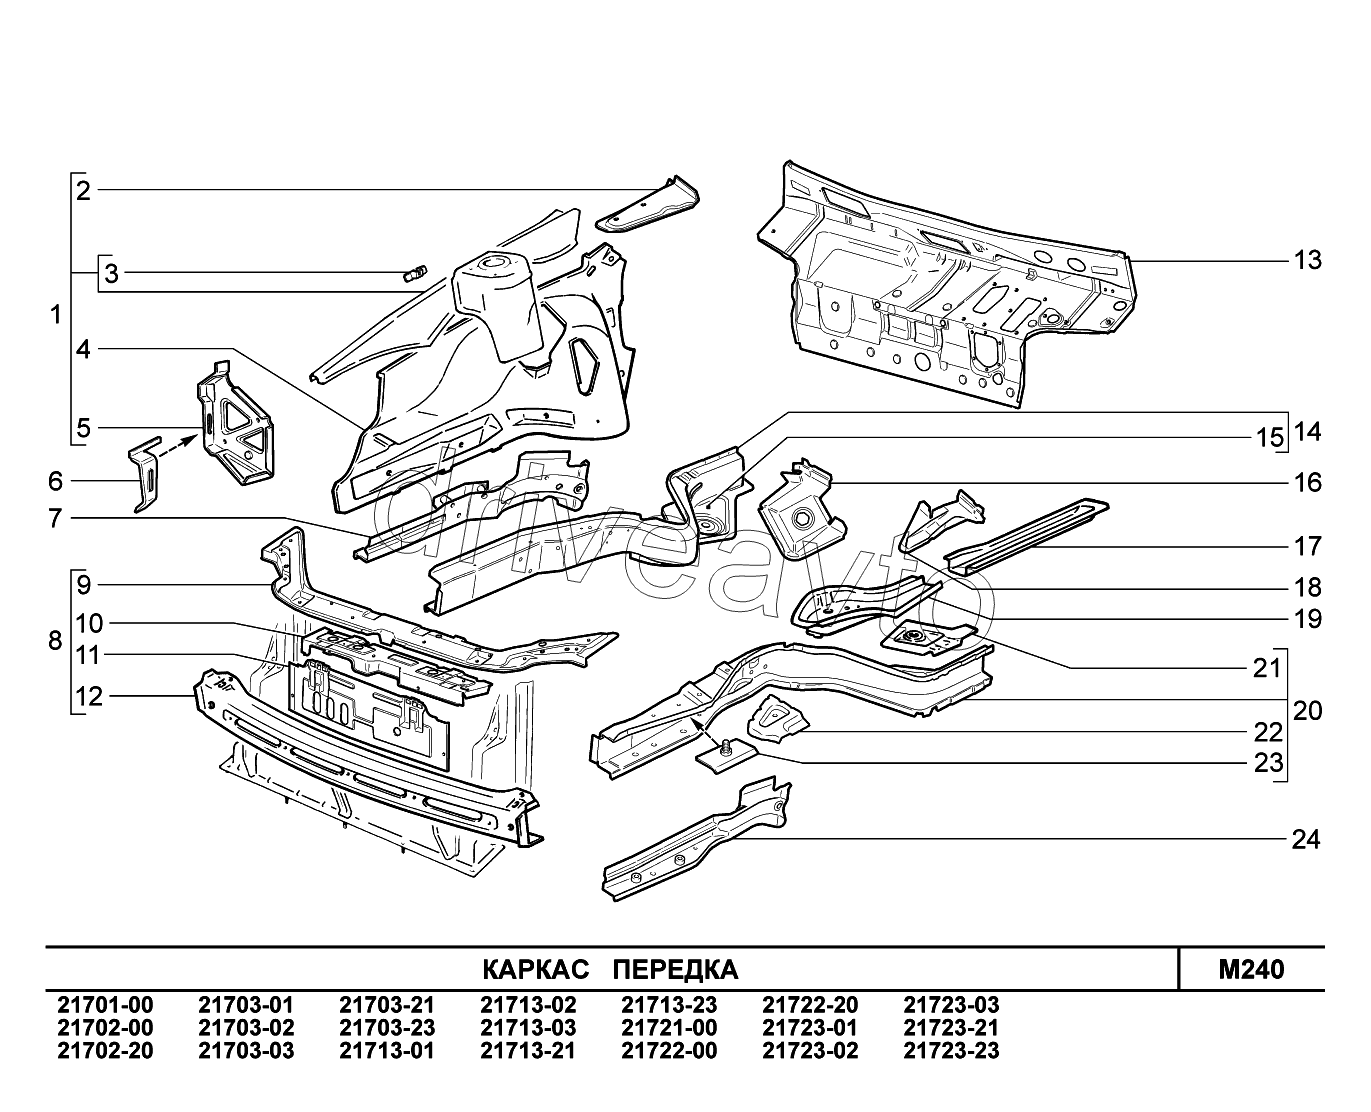 M240. Каркас передка